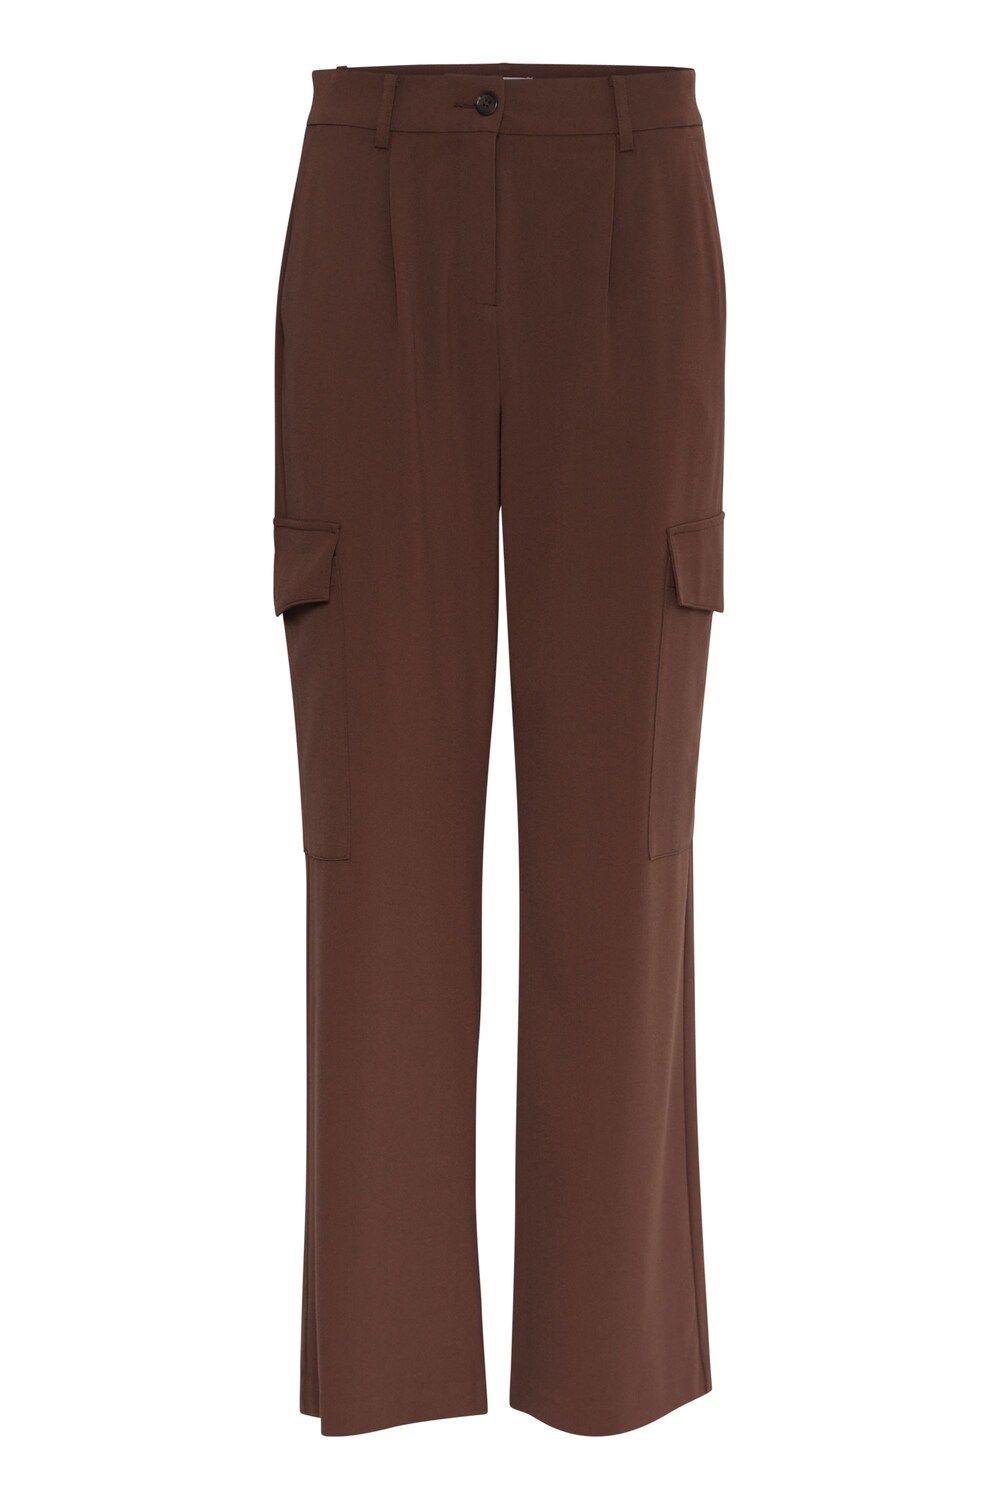 Обычные брюки-карго B.Young Danta, коричневый обычные брюки карго camp david серо коричневый